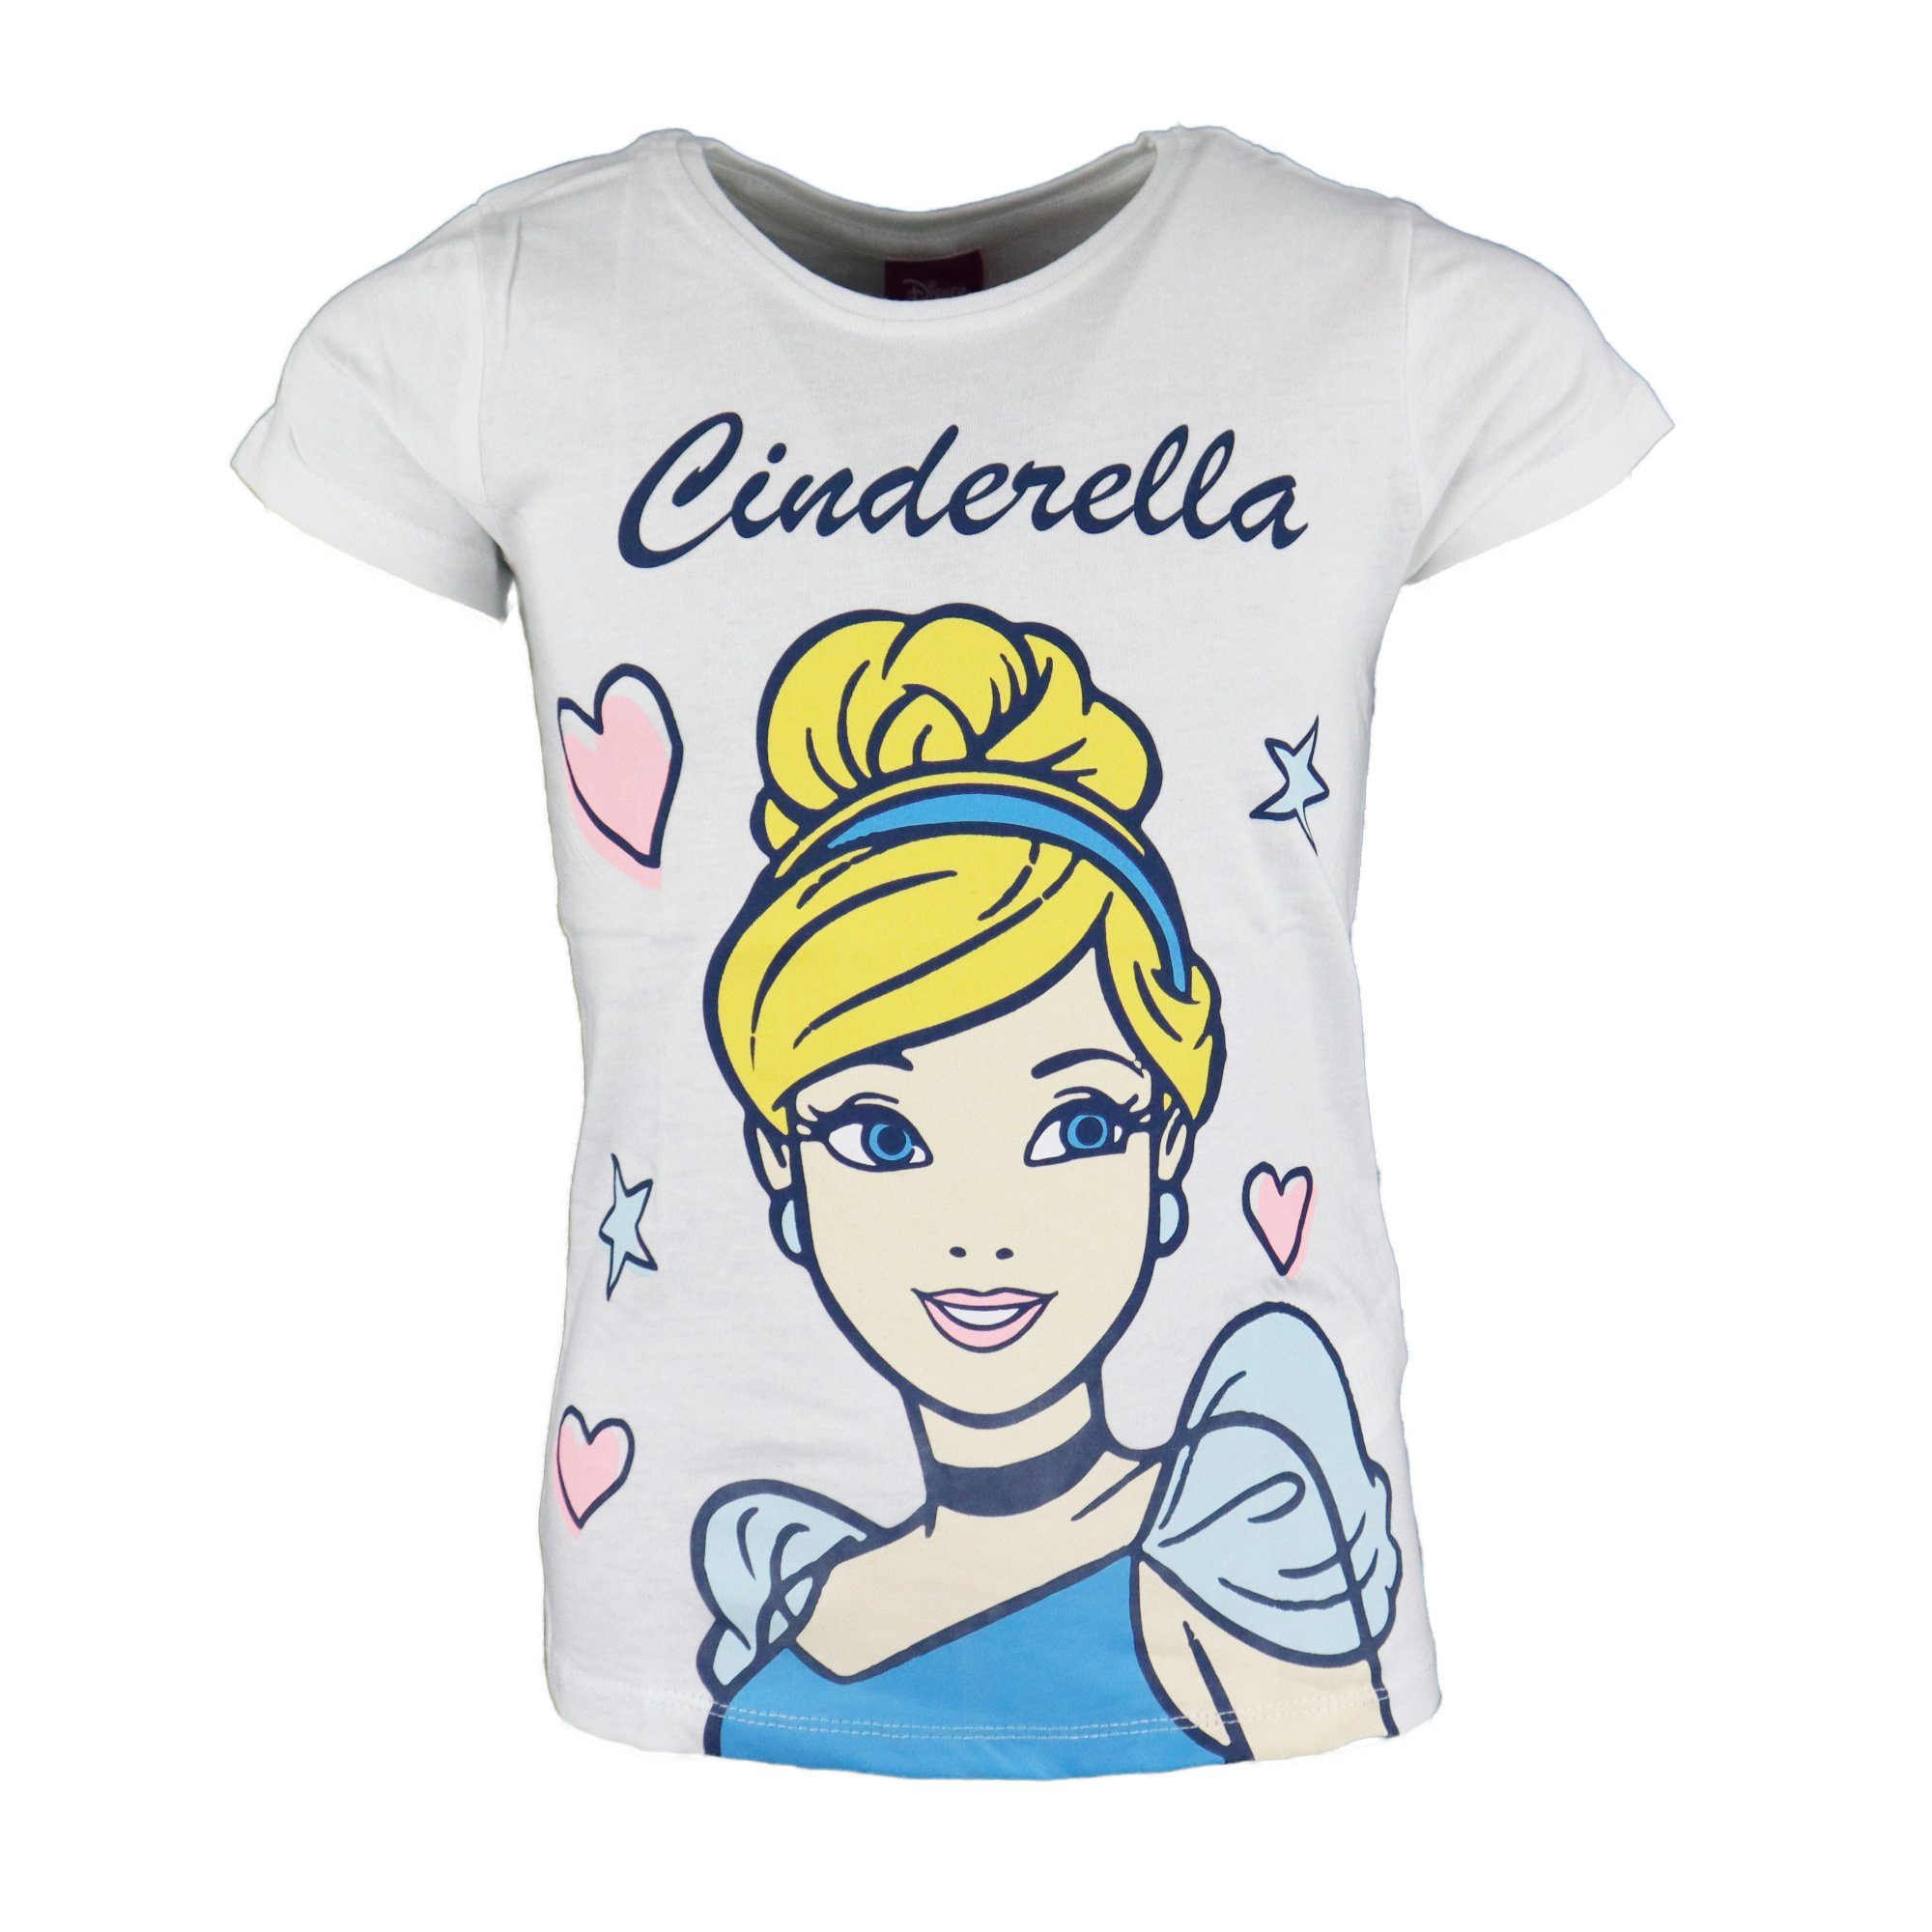 Disney Princess T-Shirt Cinderella Mädchen Kinder Shirt Gr. 98 bis 128, Baumwolle Weiß